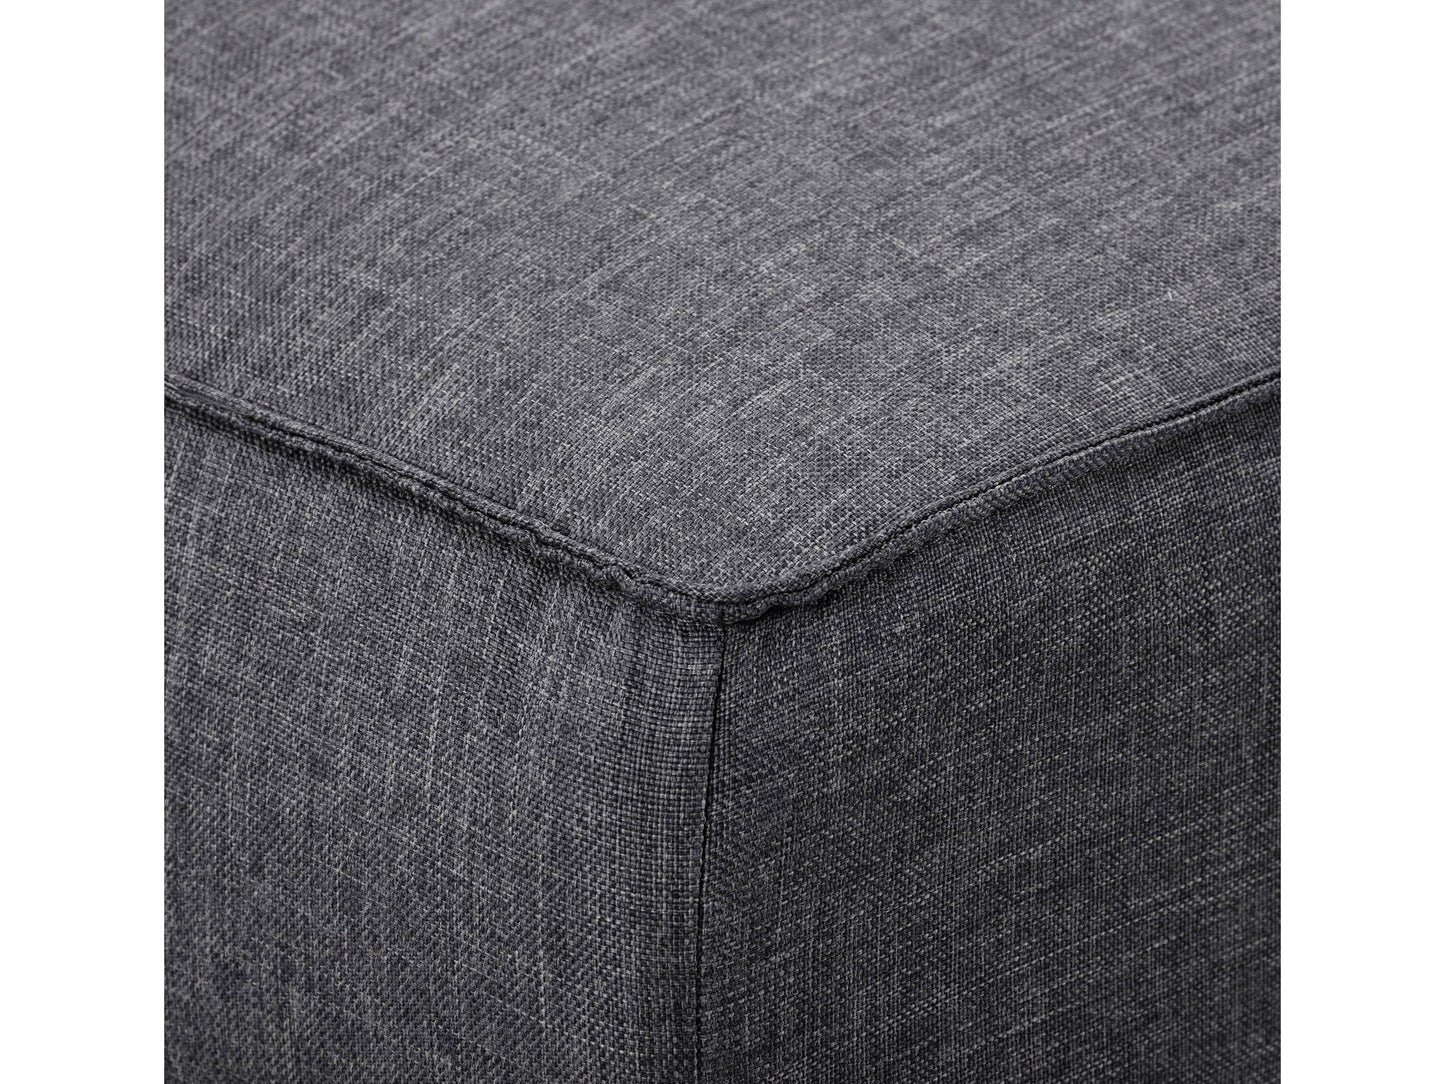 dark grey Convertible Futon Sofa Bed Yorkton collection detail image by CorLiving#color_dark-grey